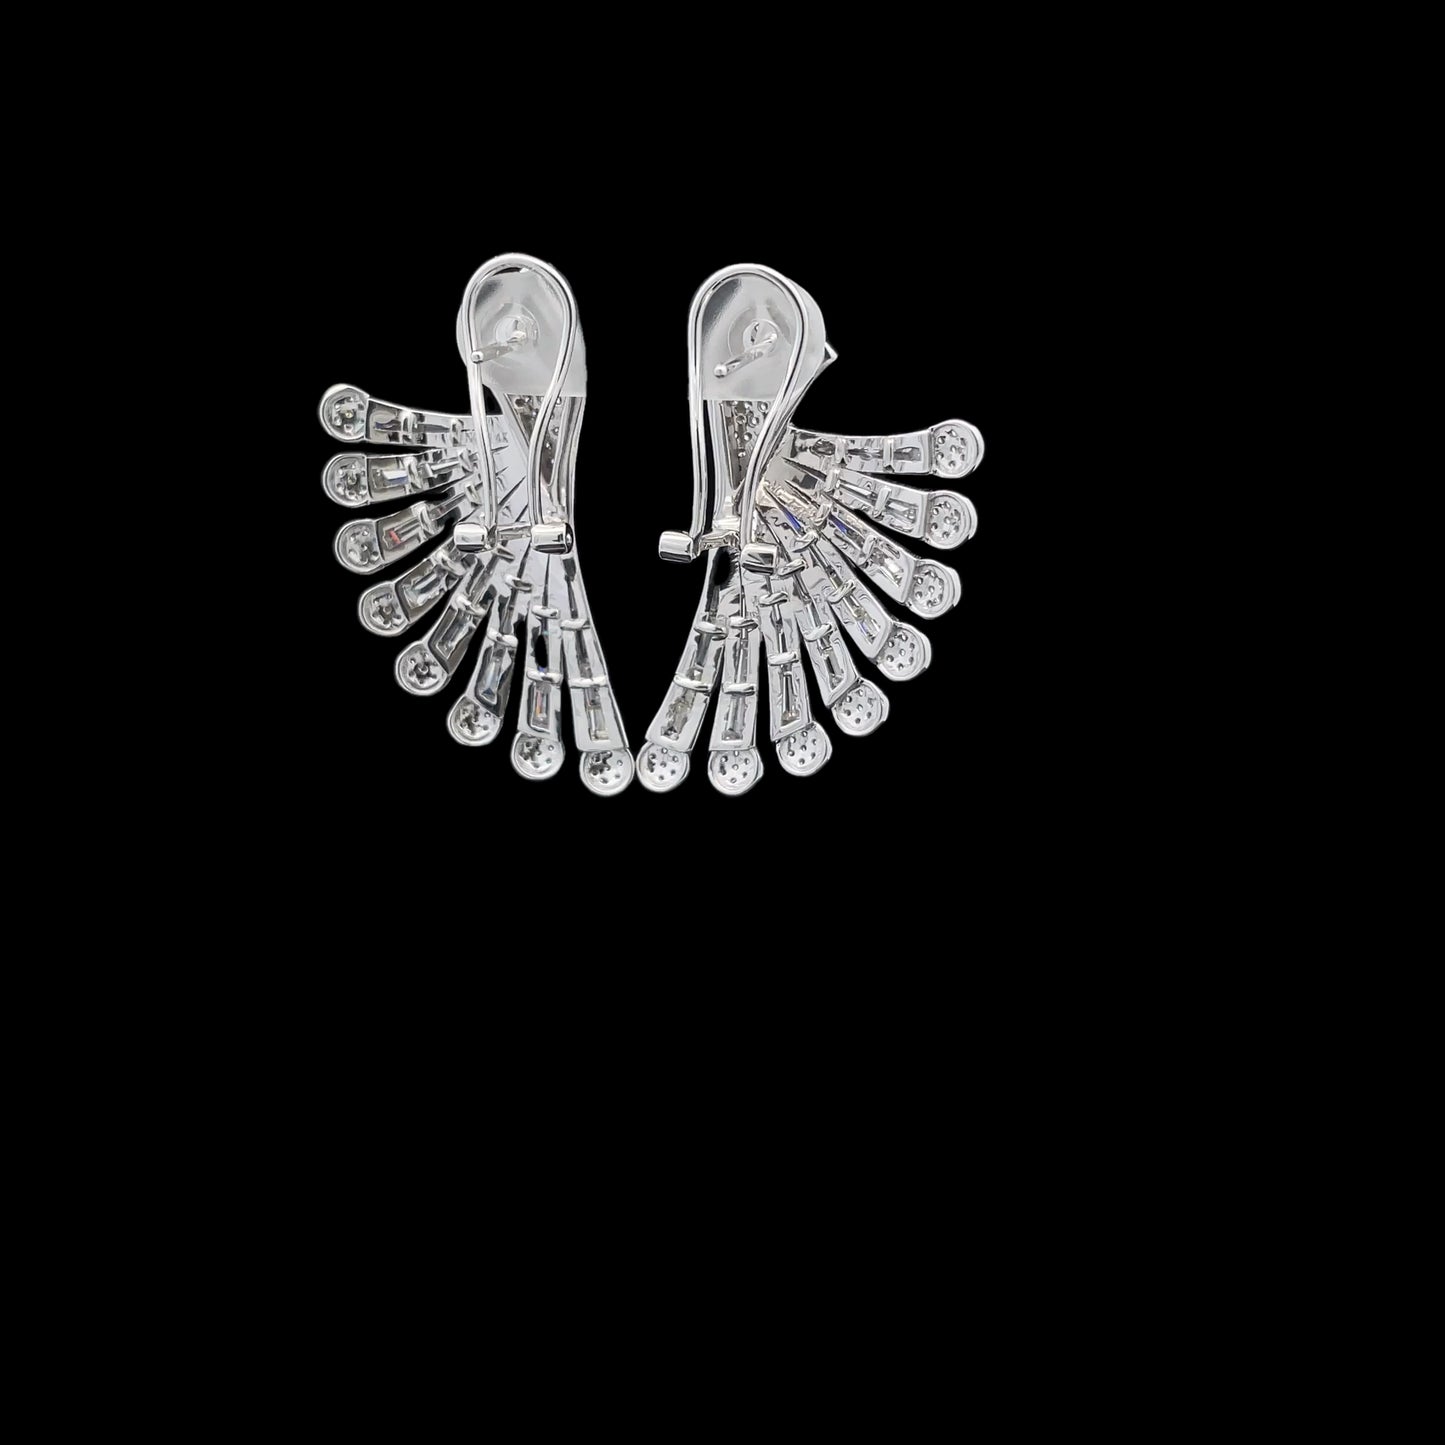 Eagle Wings Triumph Earrings